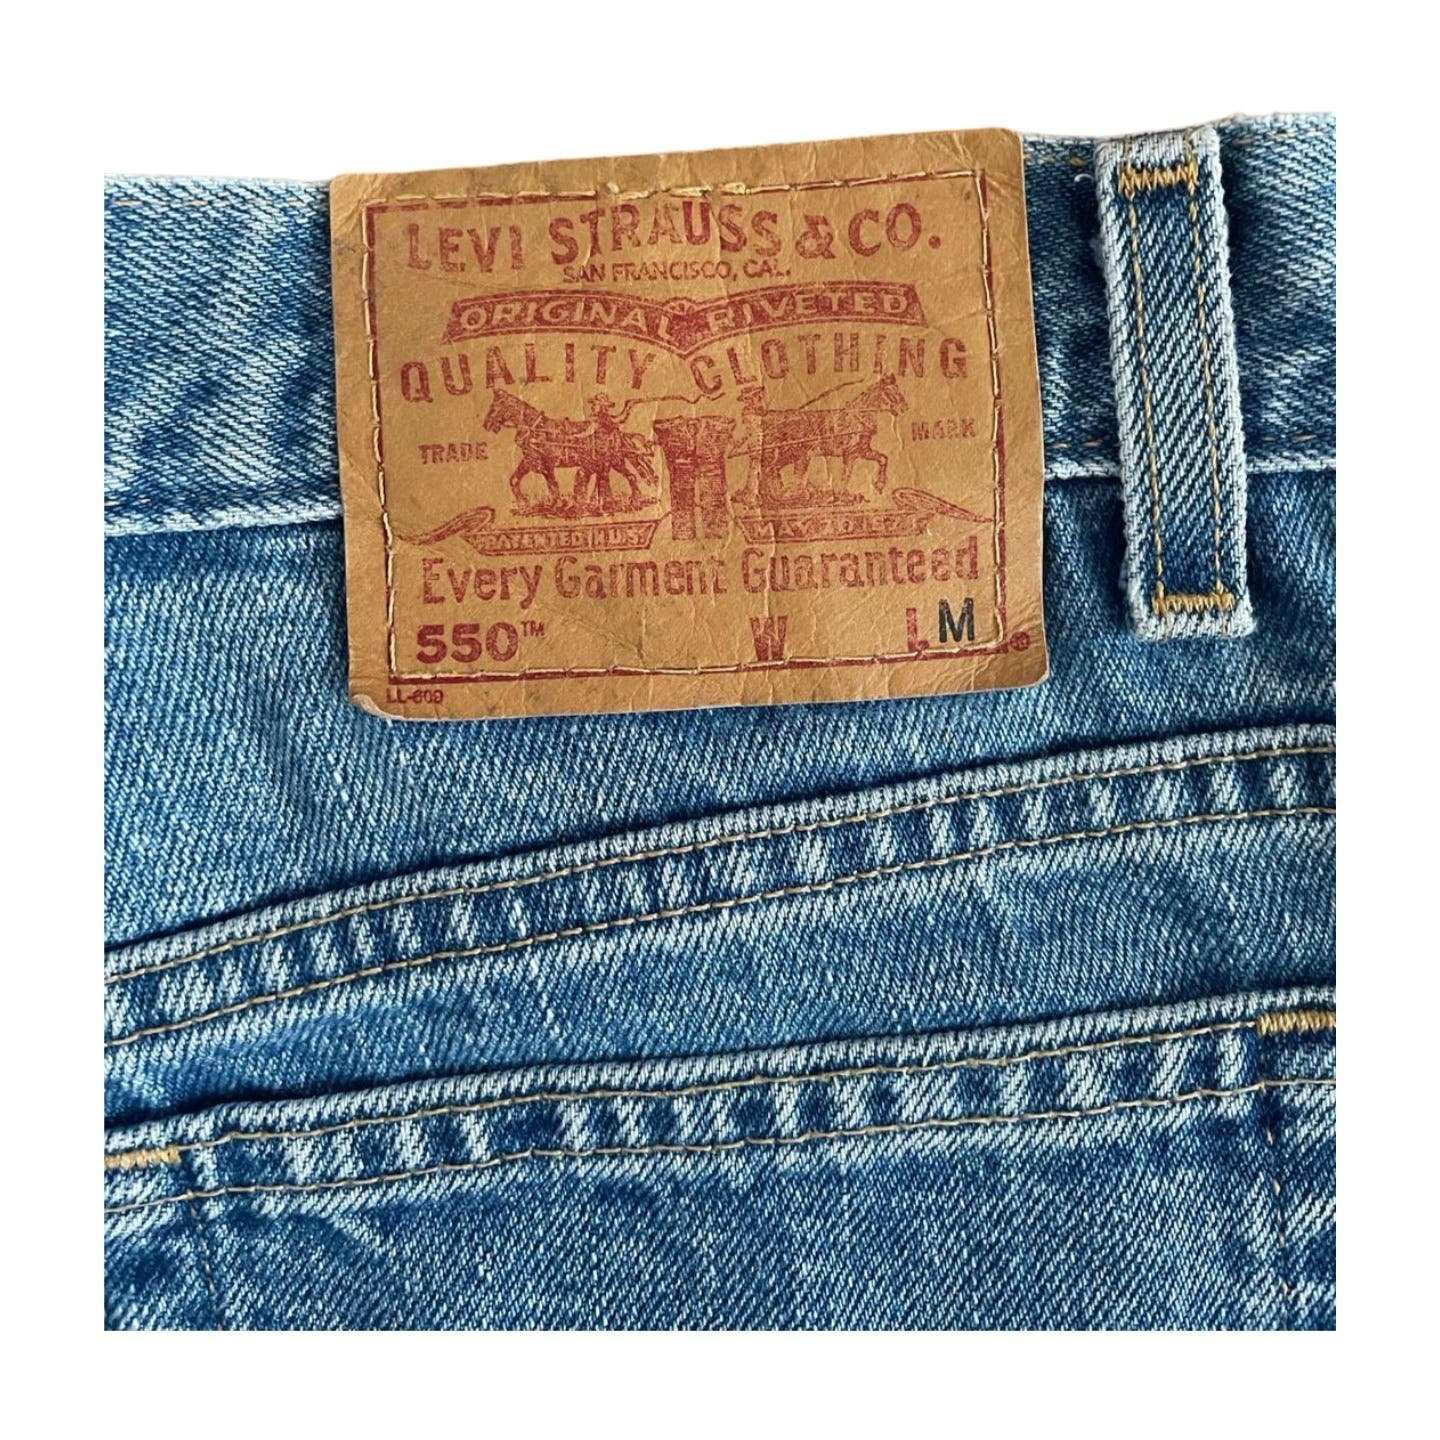 Vintage Levi’s Heart Cut Out Jeans - Le Look